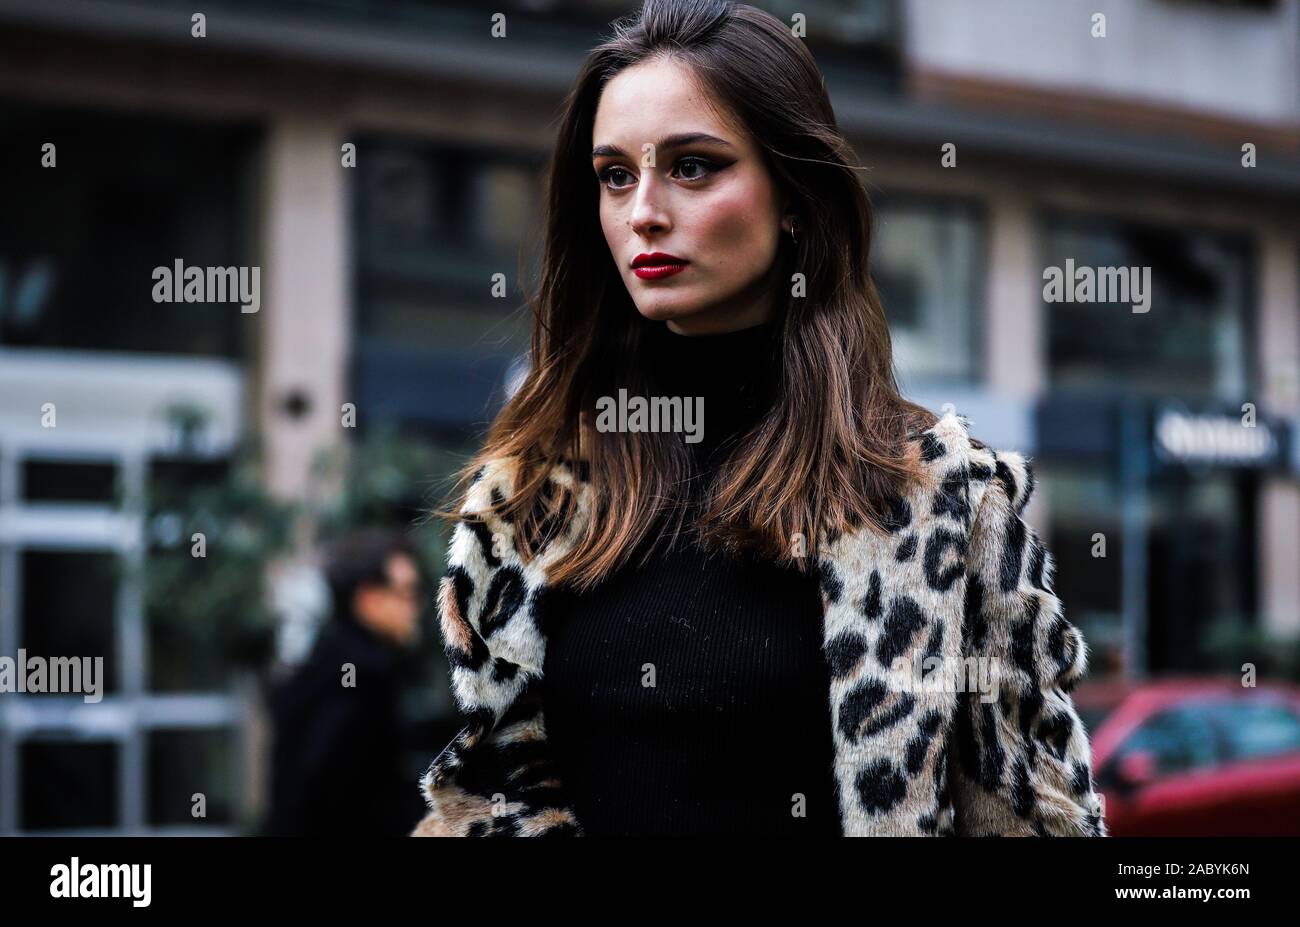 Mailand, Italien - 24. Februar 2019: Modell Chiara Corridori auf der Straße, die im Rahmen der Mailänder Modewoche. Stockfoto